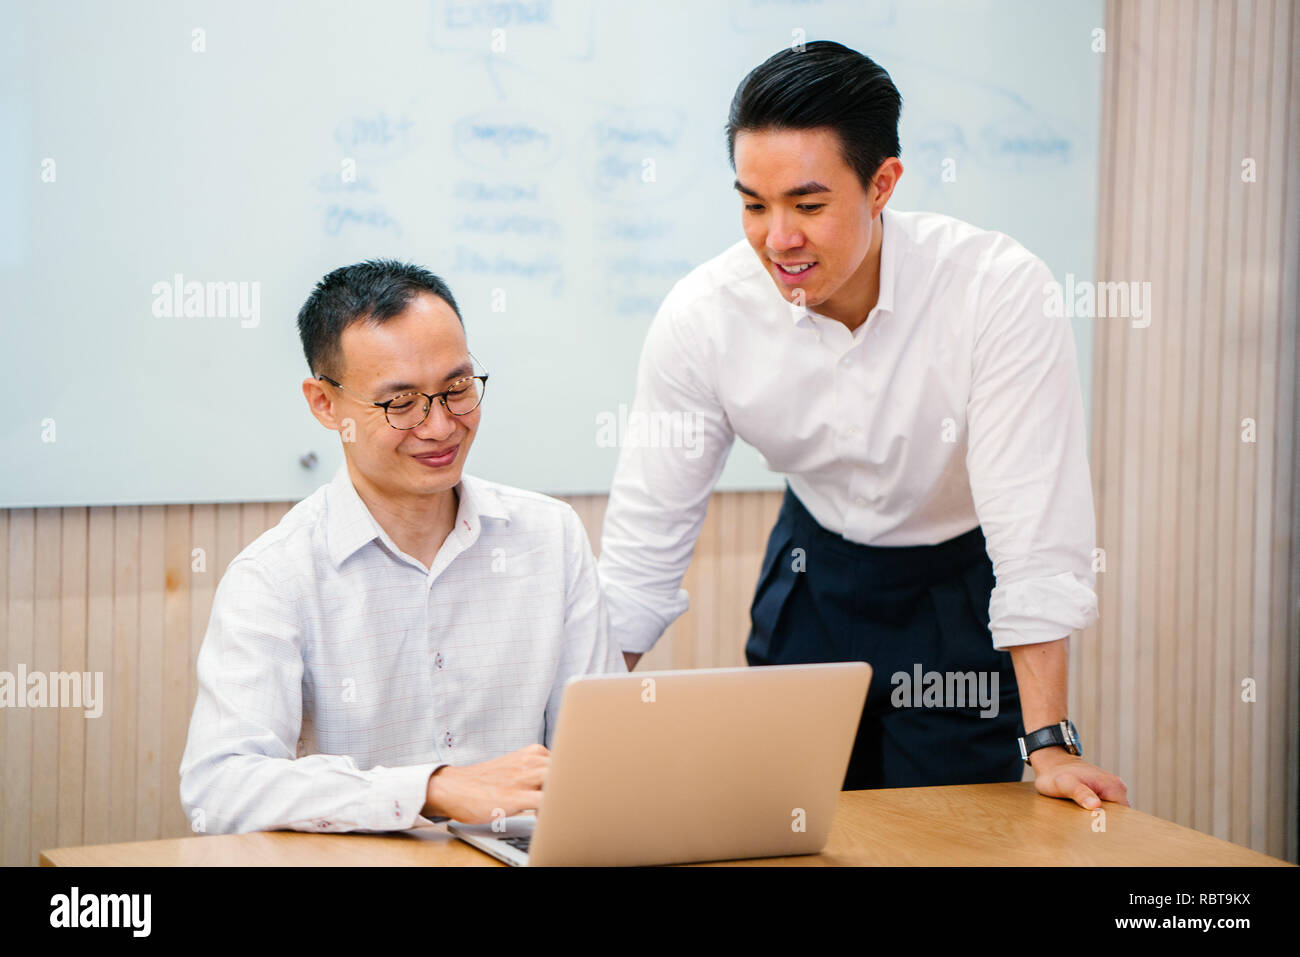 Porträt von zwei asiatischen Geschäftsleuten, die eine geschäftliche Besprechung in einem Tagungsraum mit einer Tafel im Hintergrund. Sie sind beide auf der Suche nach einem Notebook. Stockfoto